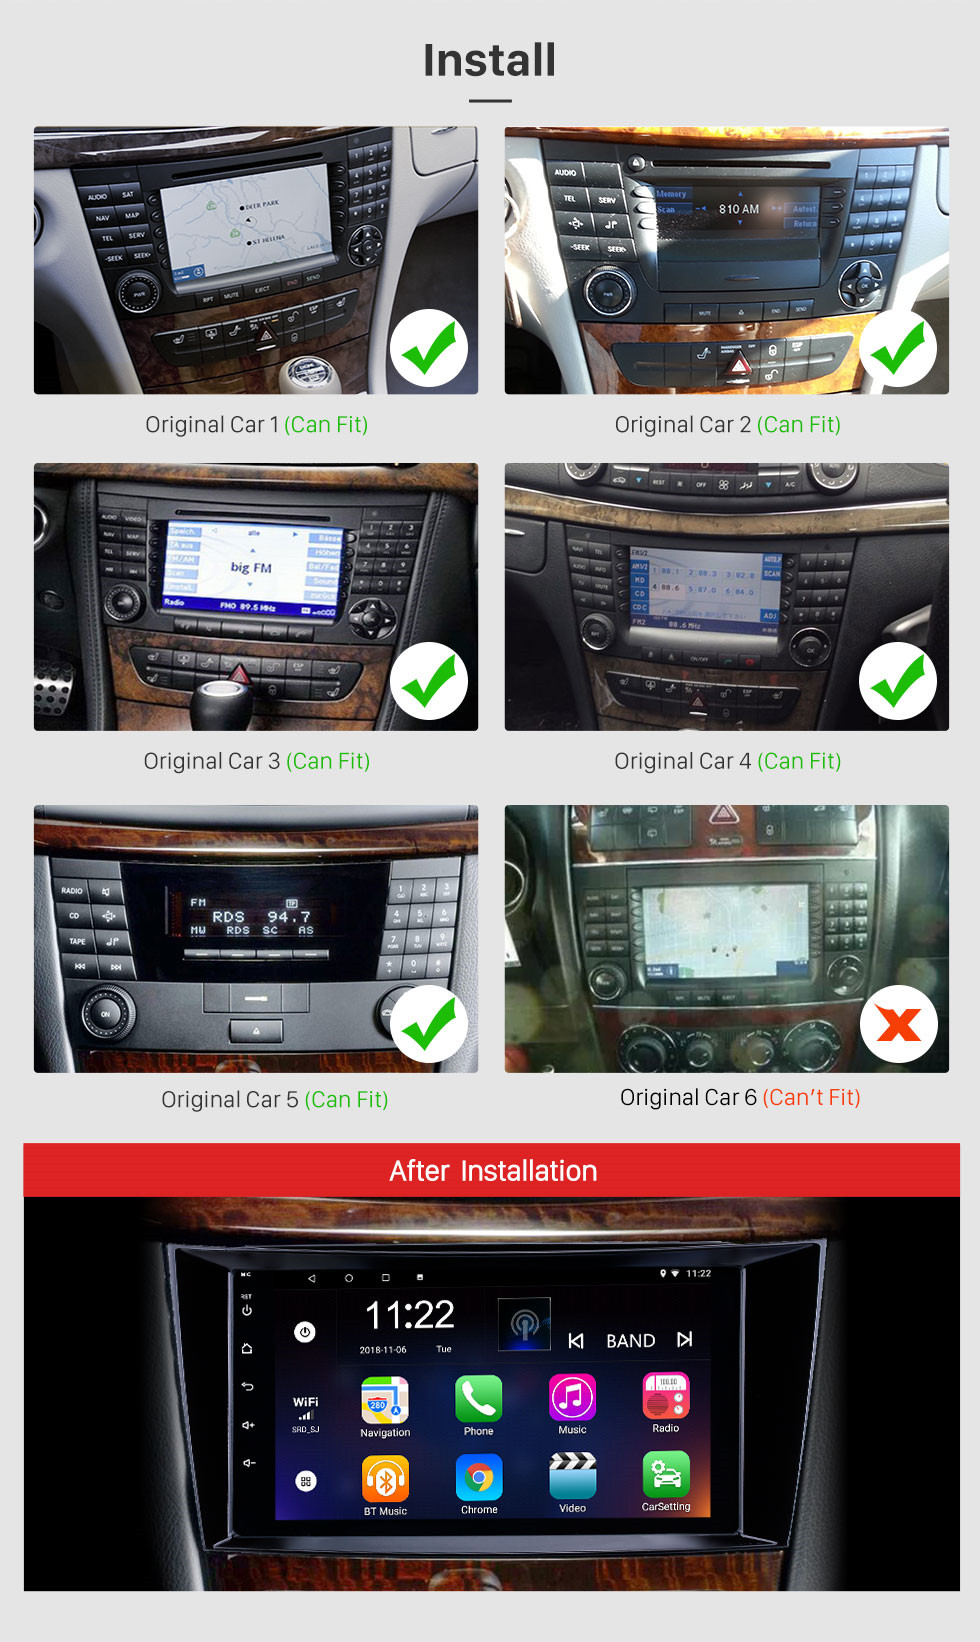 Seicane 8 pouces Android 12.0 Radio IPS plein écran GPS Navigation lecteur multimédia de voiture pour 2001-2008 Mercedes Benz G W463 avec RDS 3G WiFi Bluetooth lien miroir OBD2 commande au volant